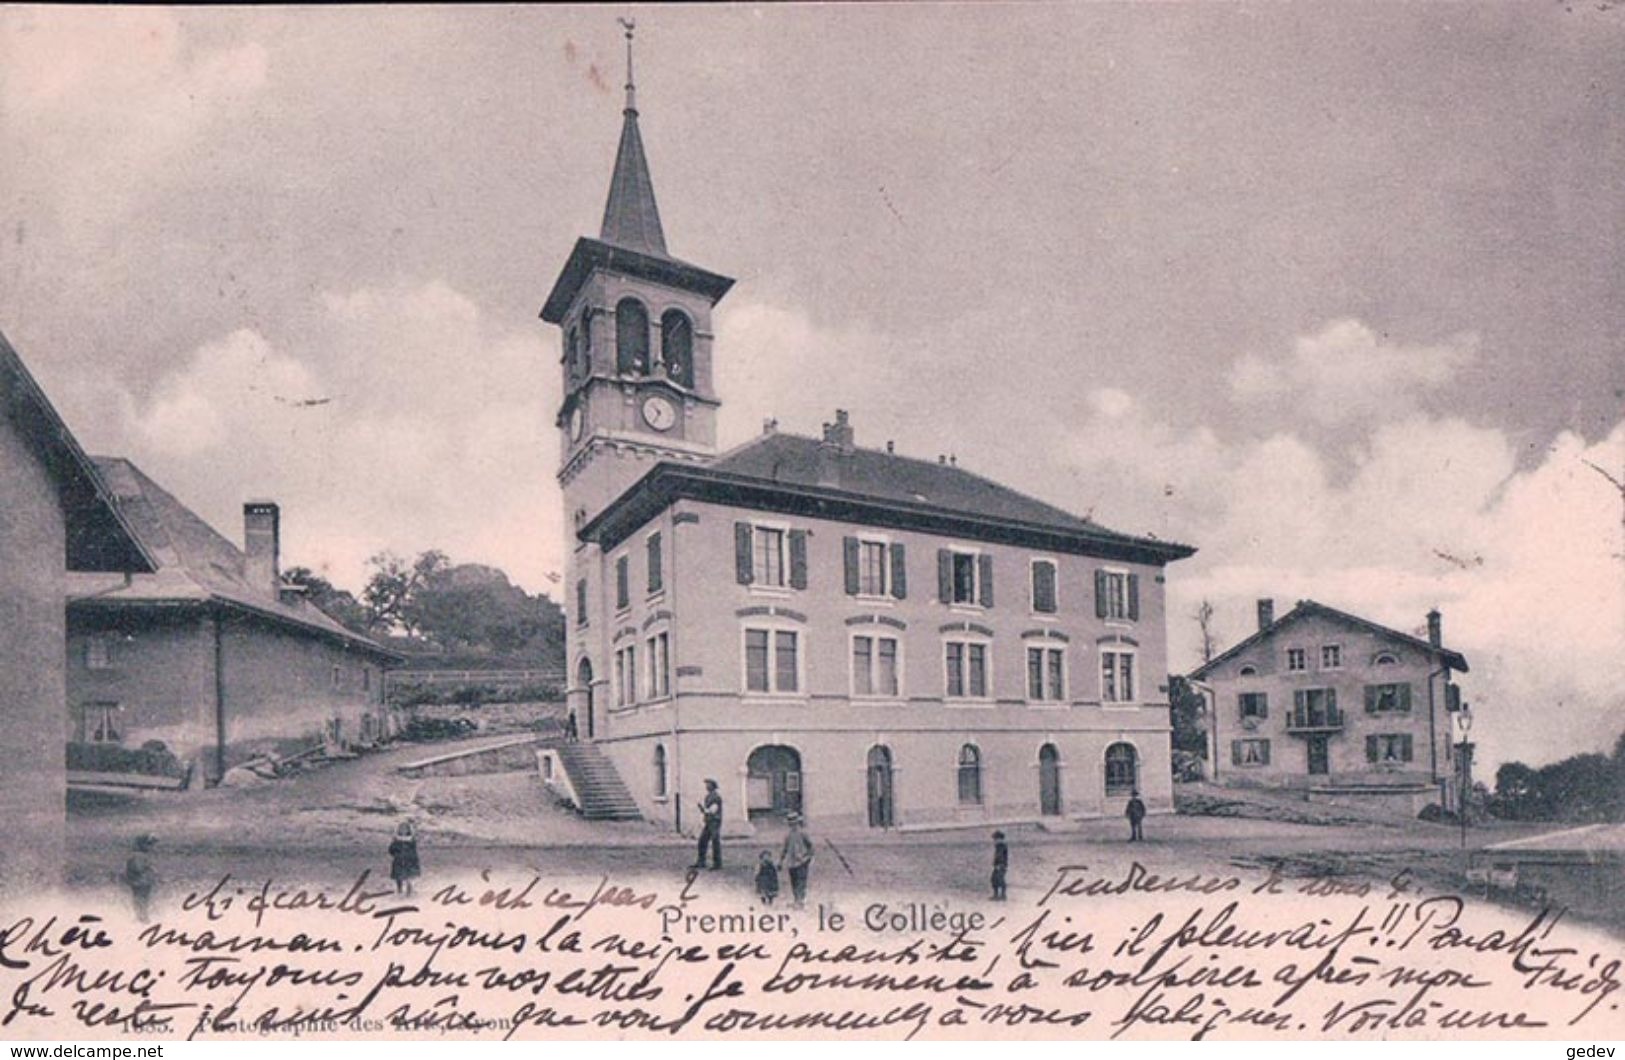 Premier VD, Le Collège (29.1.1902) - Premier